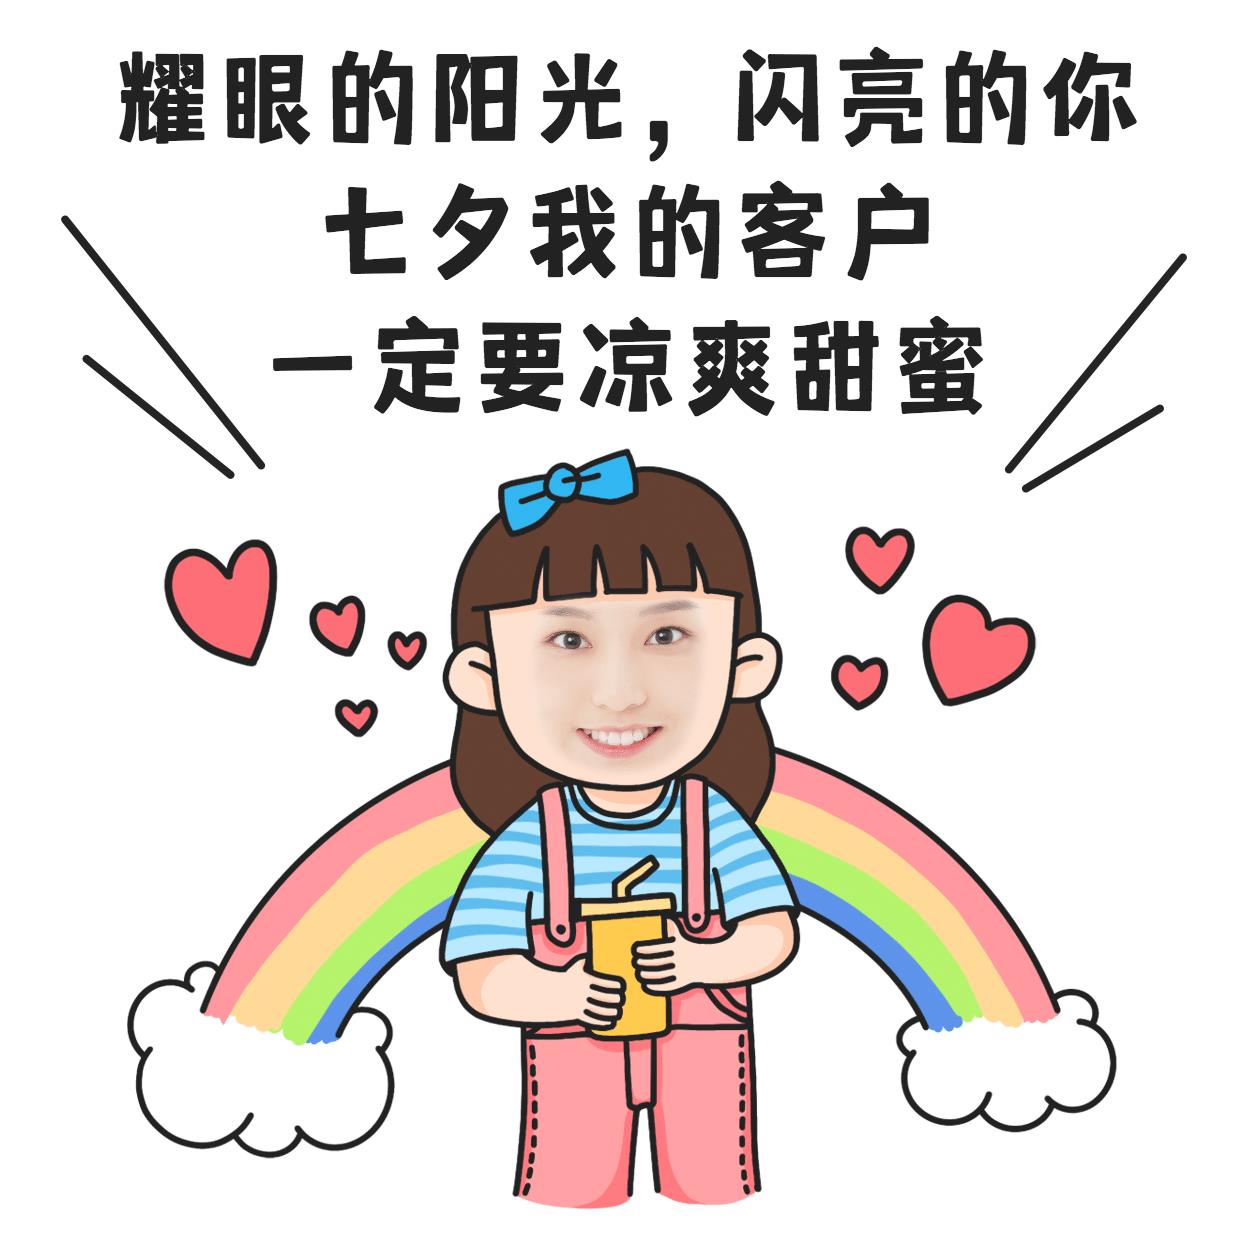 七夕创意玩法祝福手绘彩虹爱心图片